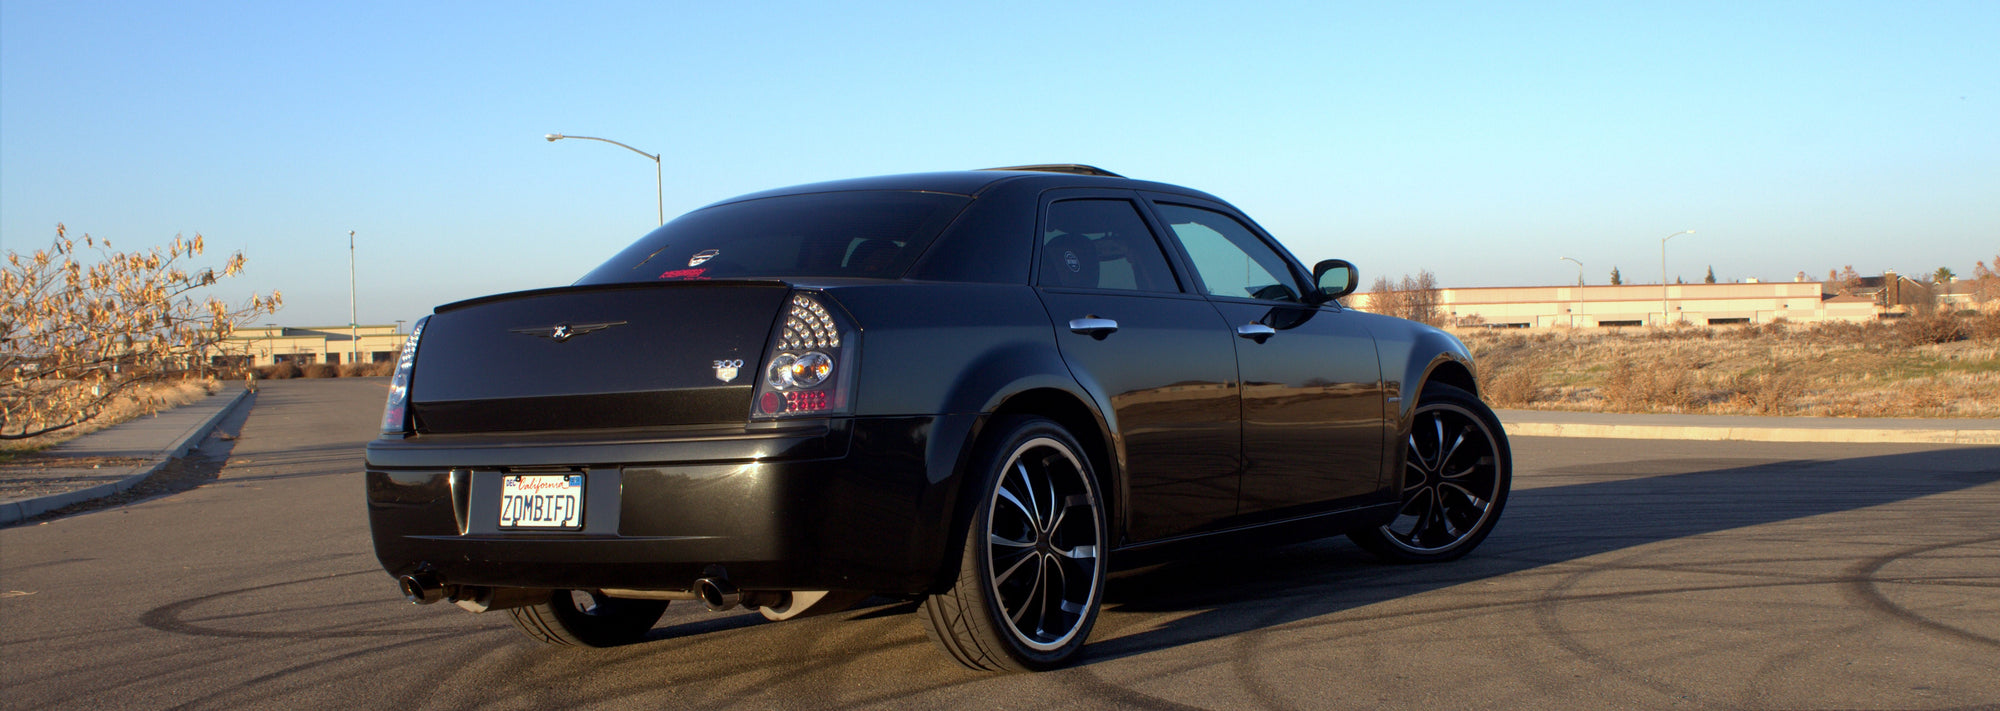 2007 Chrysler 300 6.1L V8